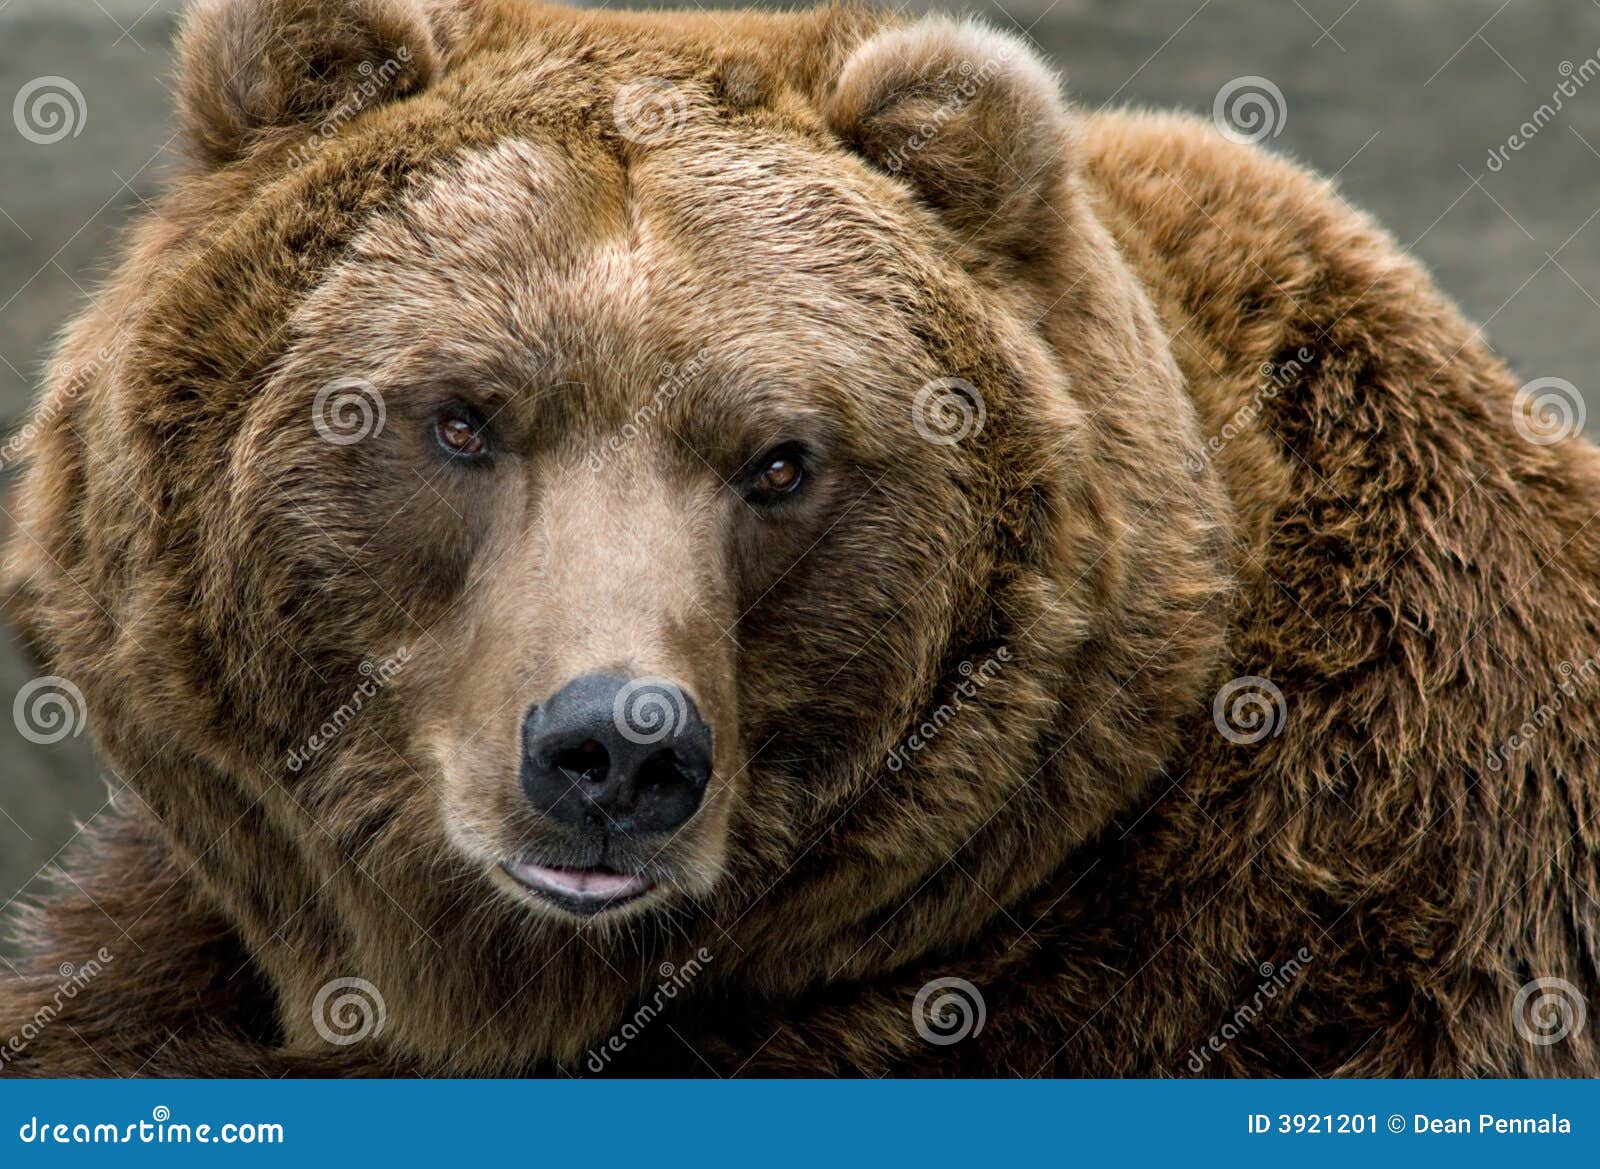 brown bear (ursus arctos)